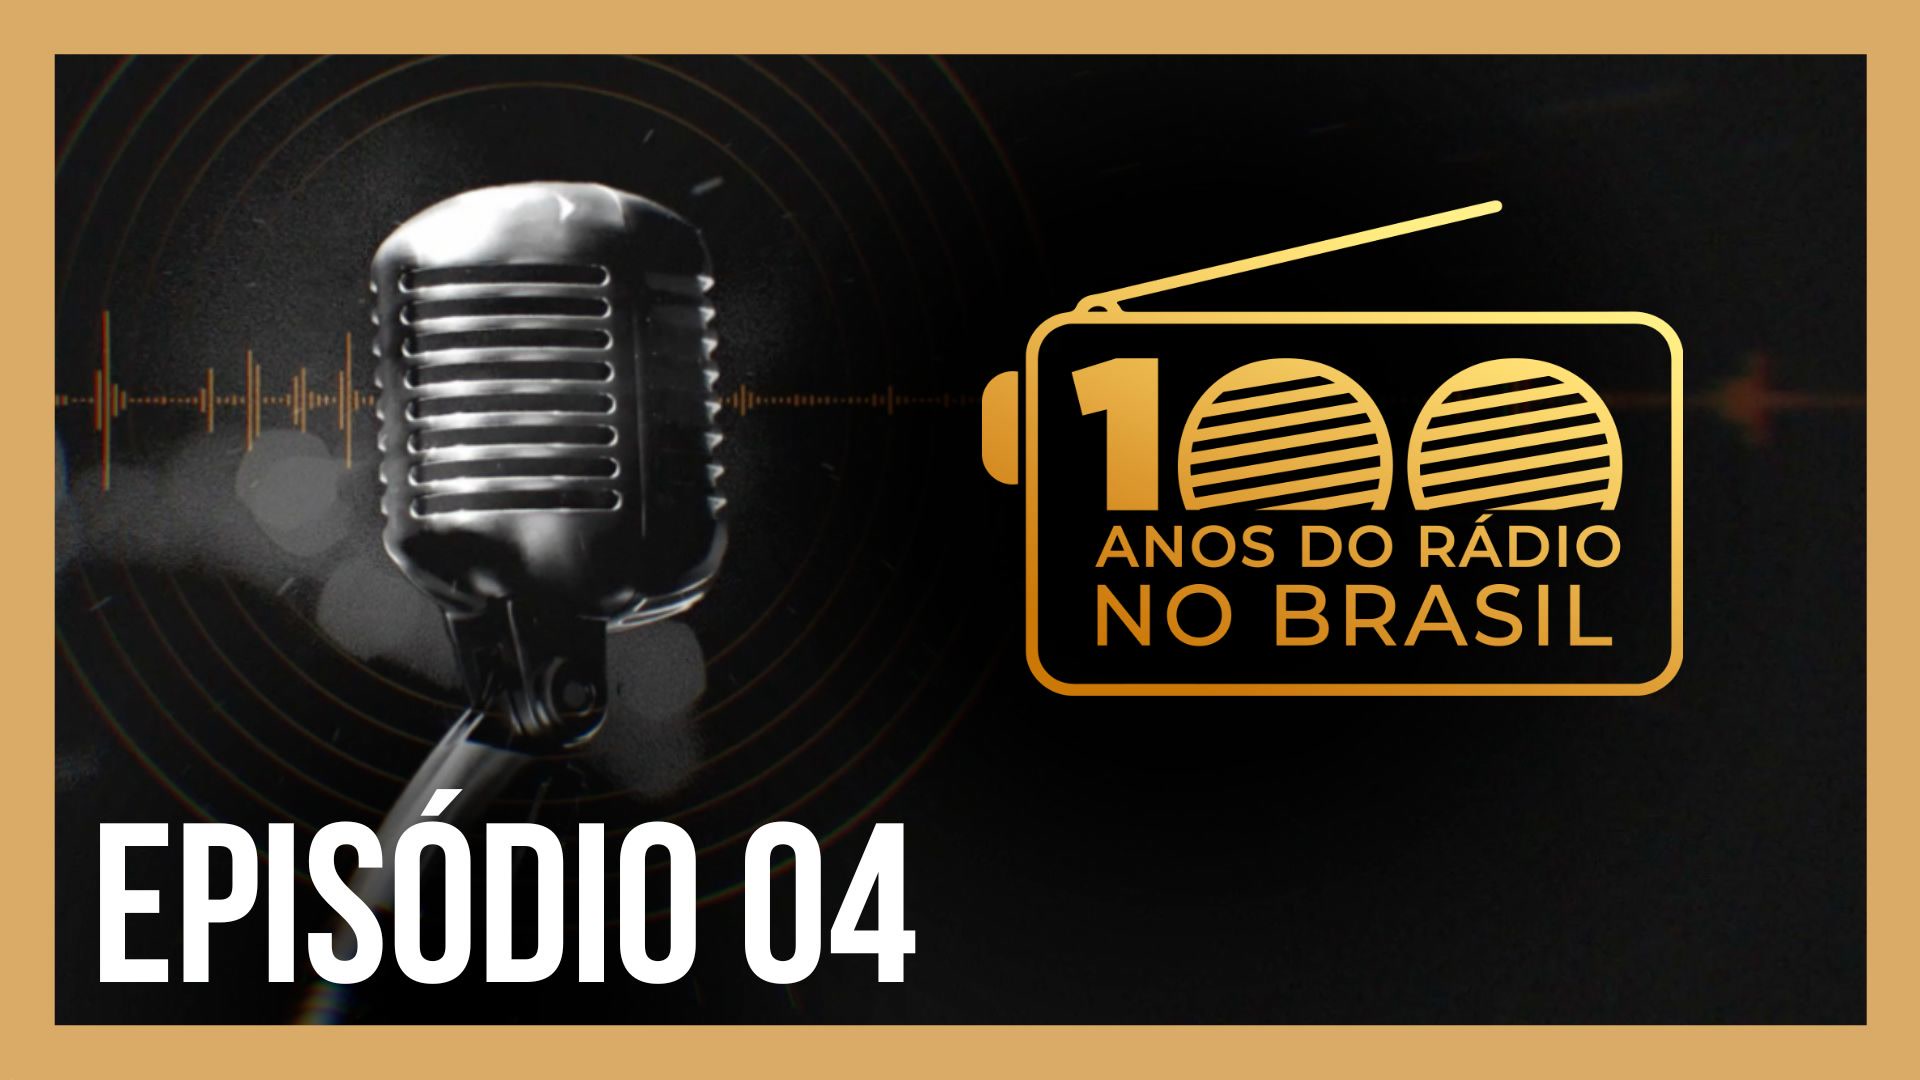 Vídeo: Podcast 100 Anos do Rádio no Brasil | Grandes Narradores da Rádio Record